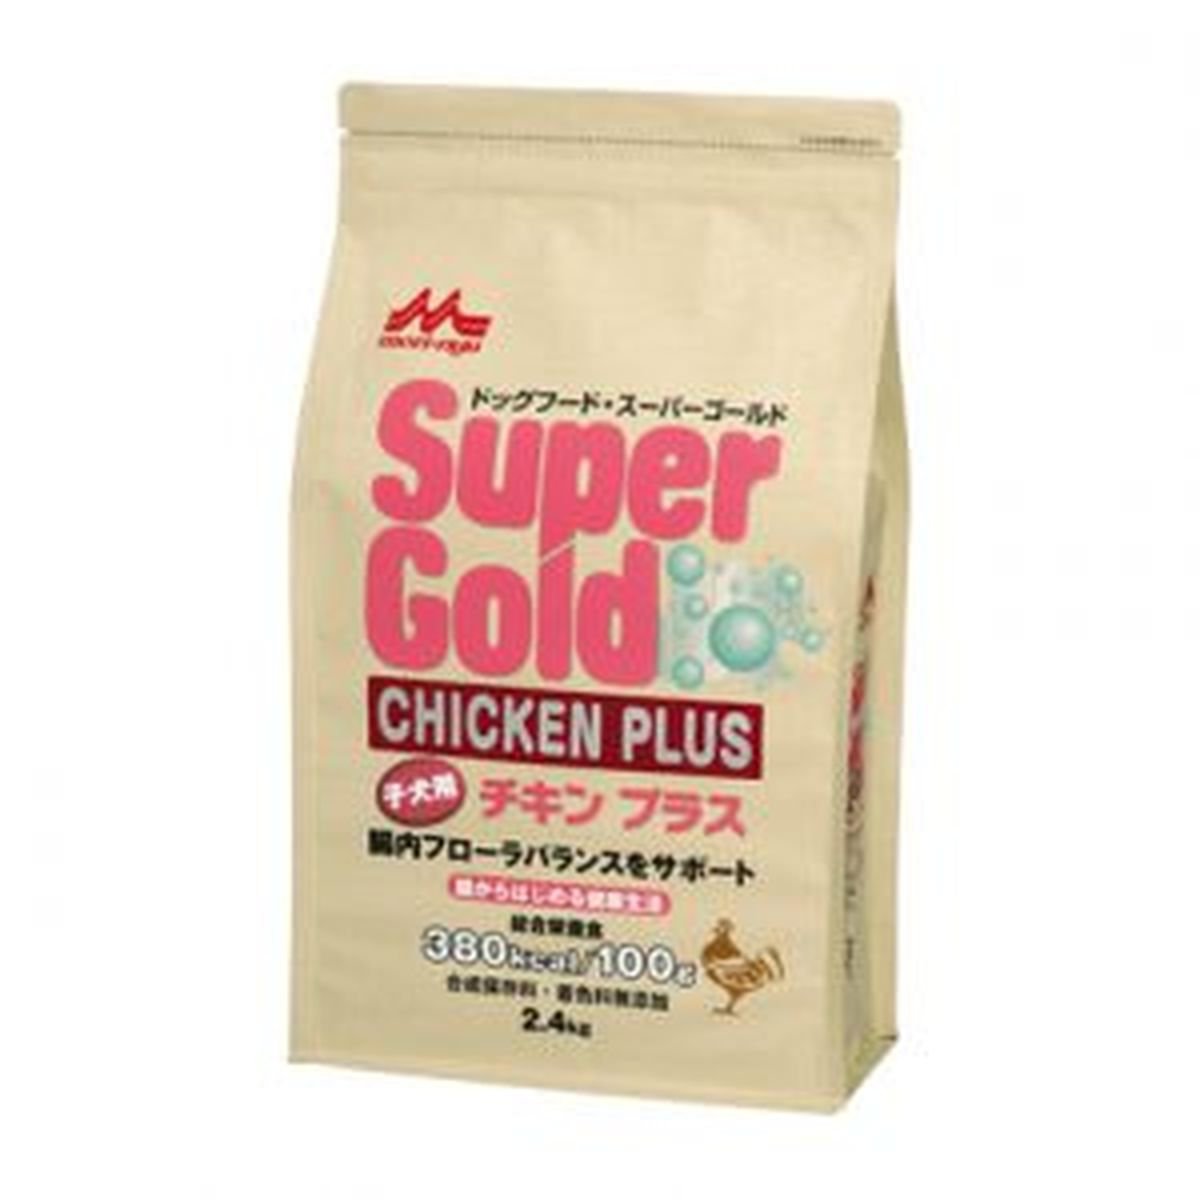 スーパーゴールド チキンプラス 子犬用2.4kg×4袋